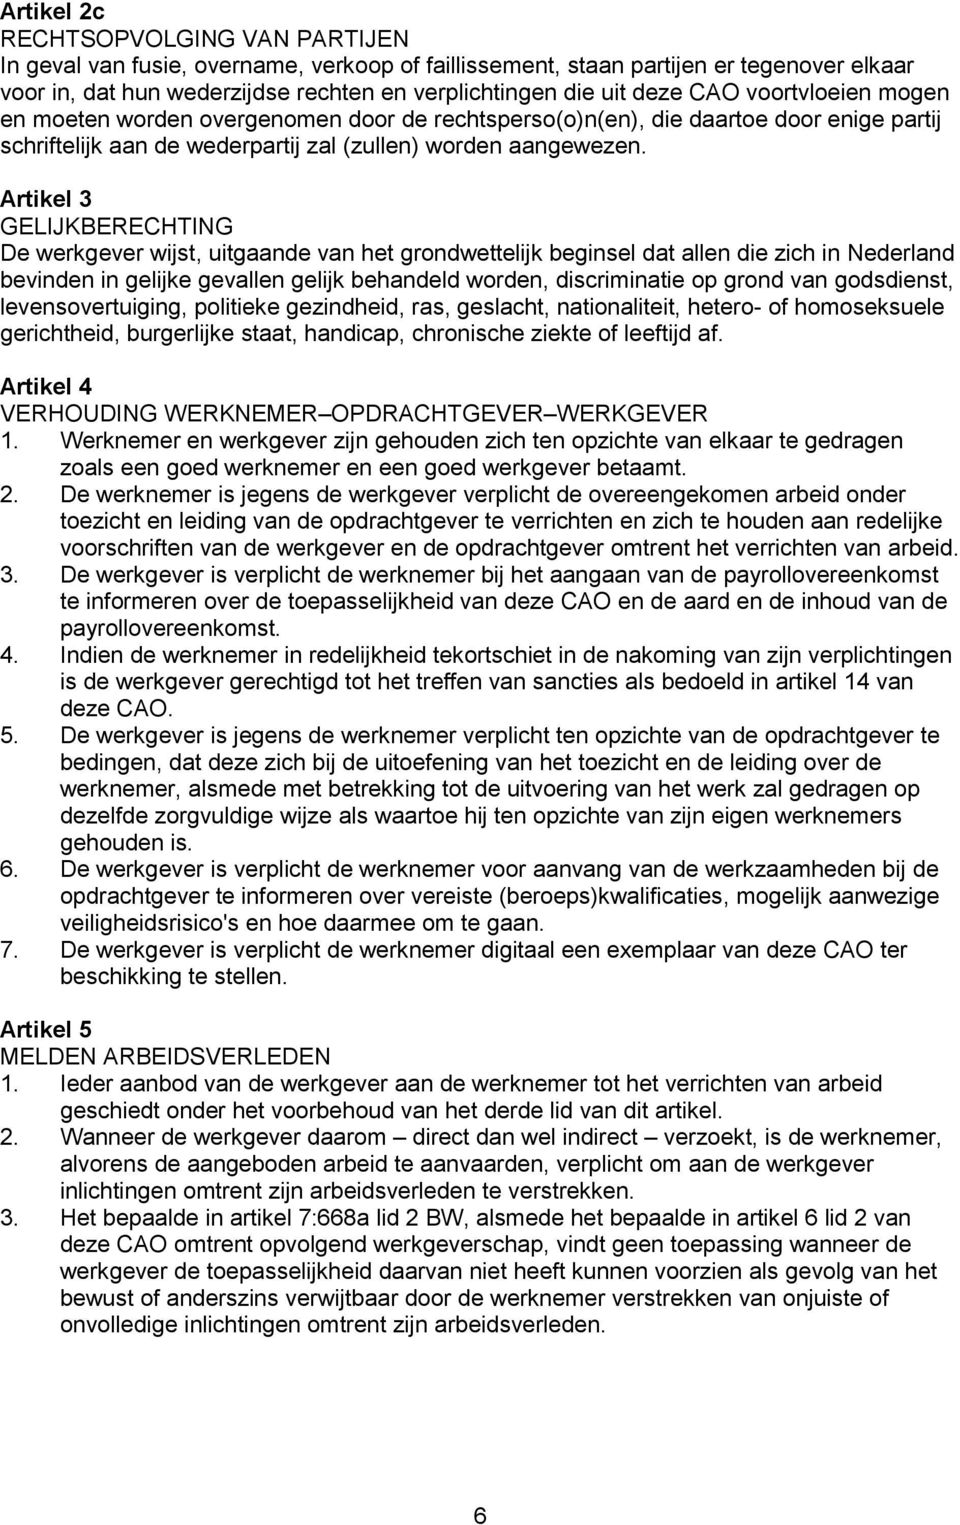 Artikel 3 GELIJKBERECHTING De werkgever wijst, uitgaande van het grondwettelijk beginsel dat allen die zich in Nederland bevinden in gelijke gevallen gelijk behandeld worden, discriminatie op grond